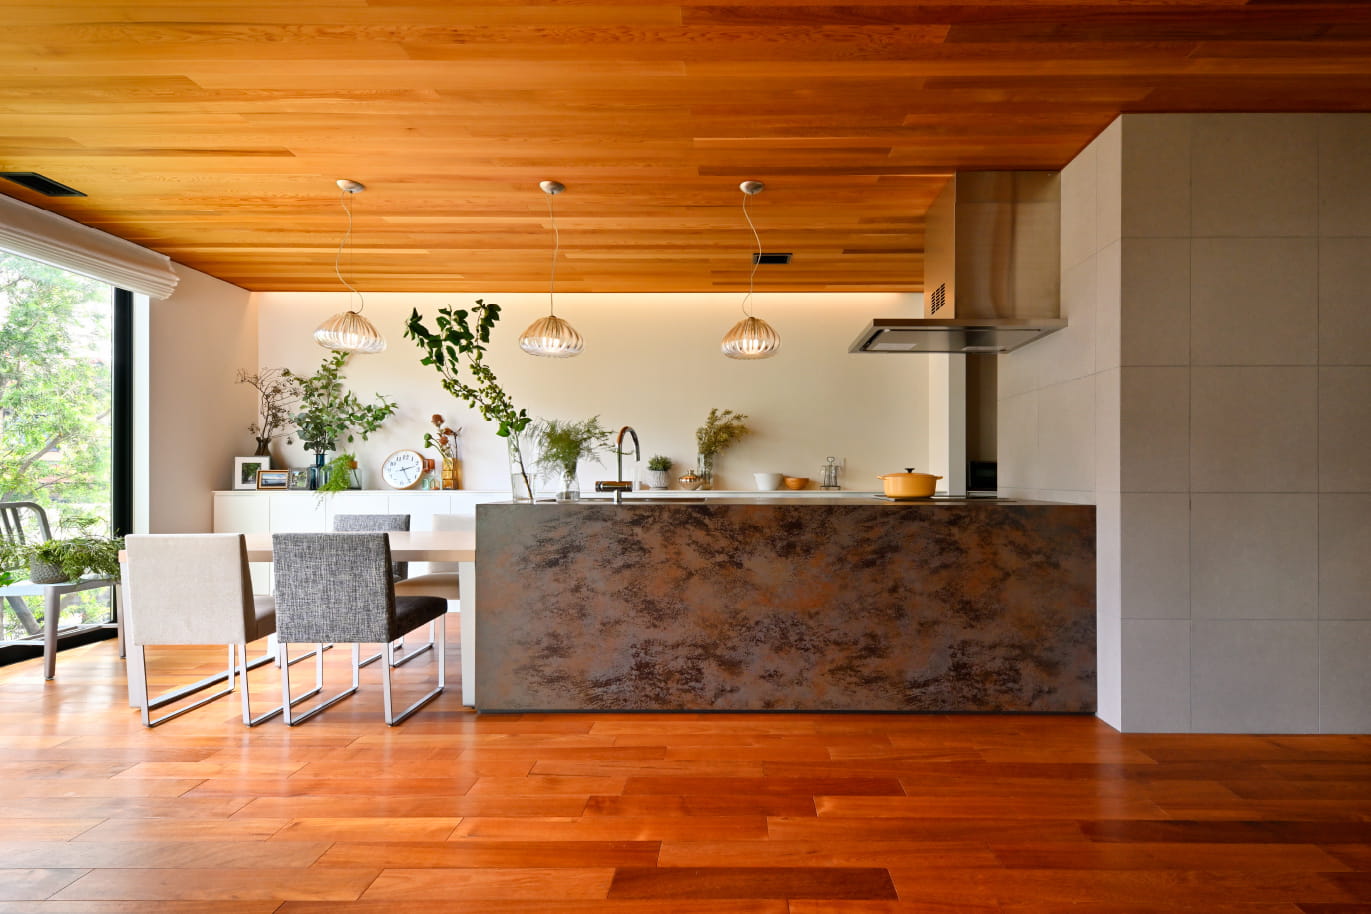 床には無垢材のチーク、天井も無垢のウエスタンレッドシターを採用,キッチンにはマーブル模様が印象的なセラミック。